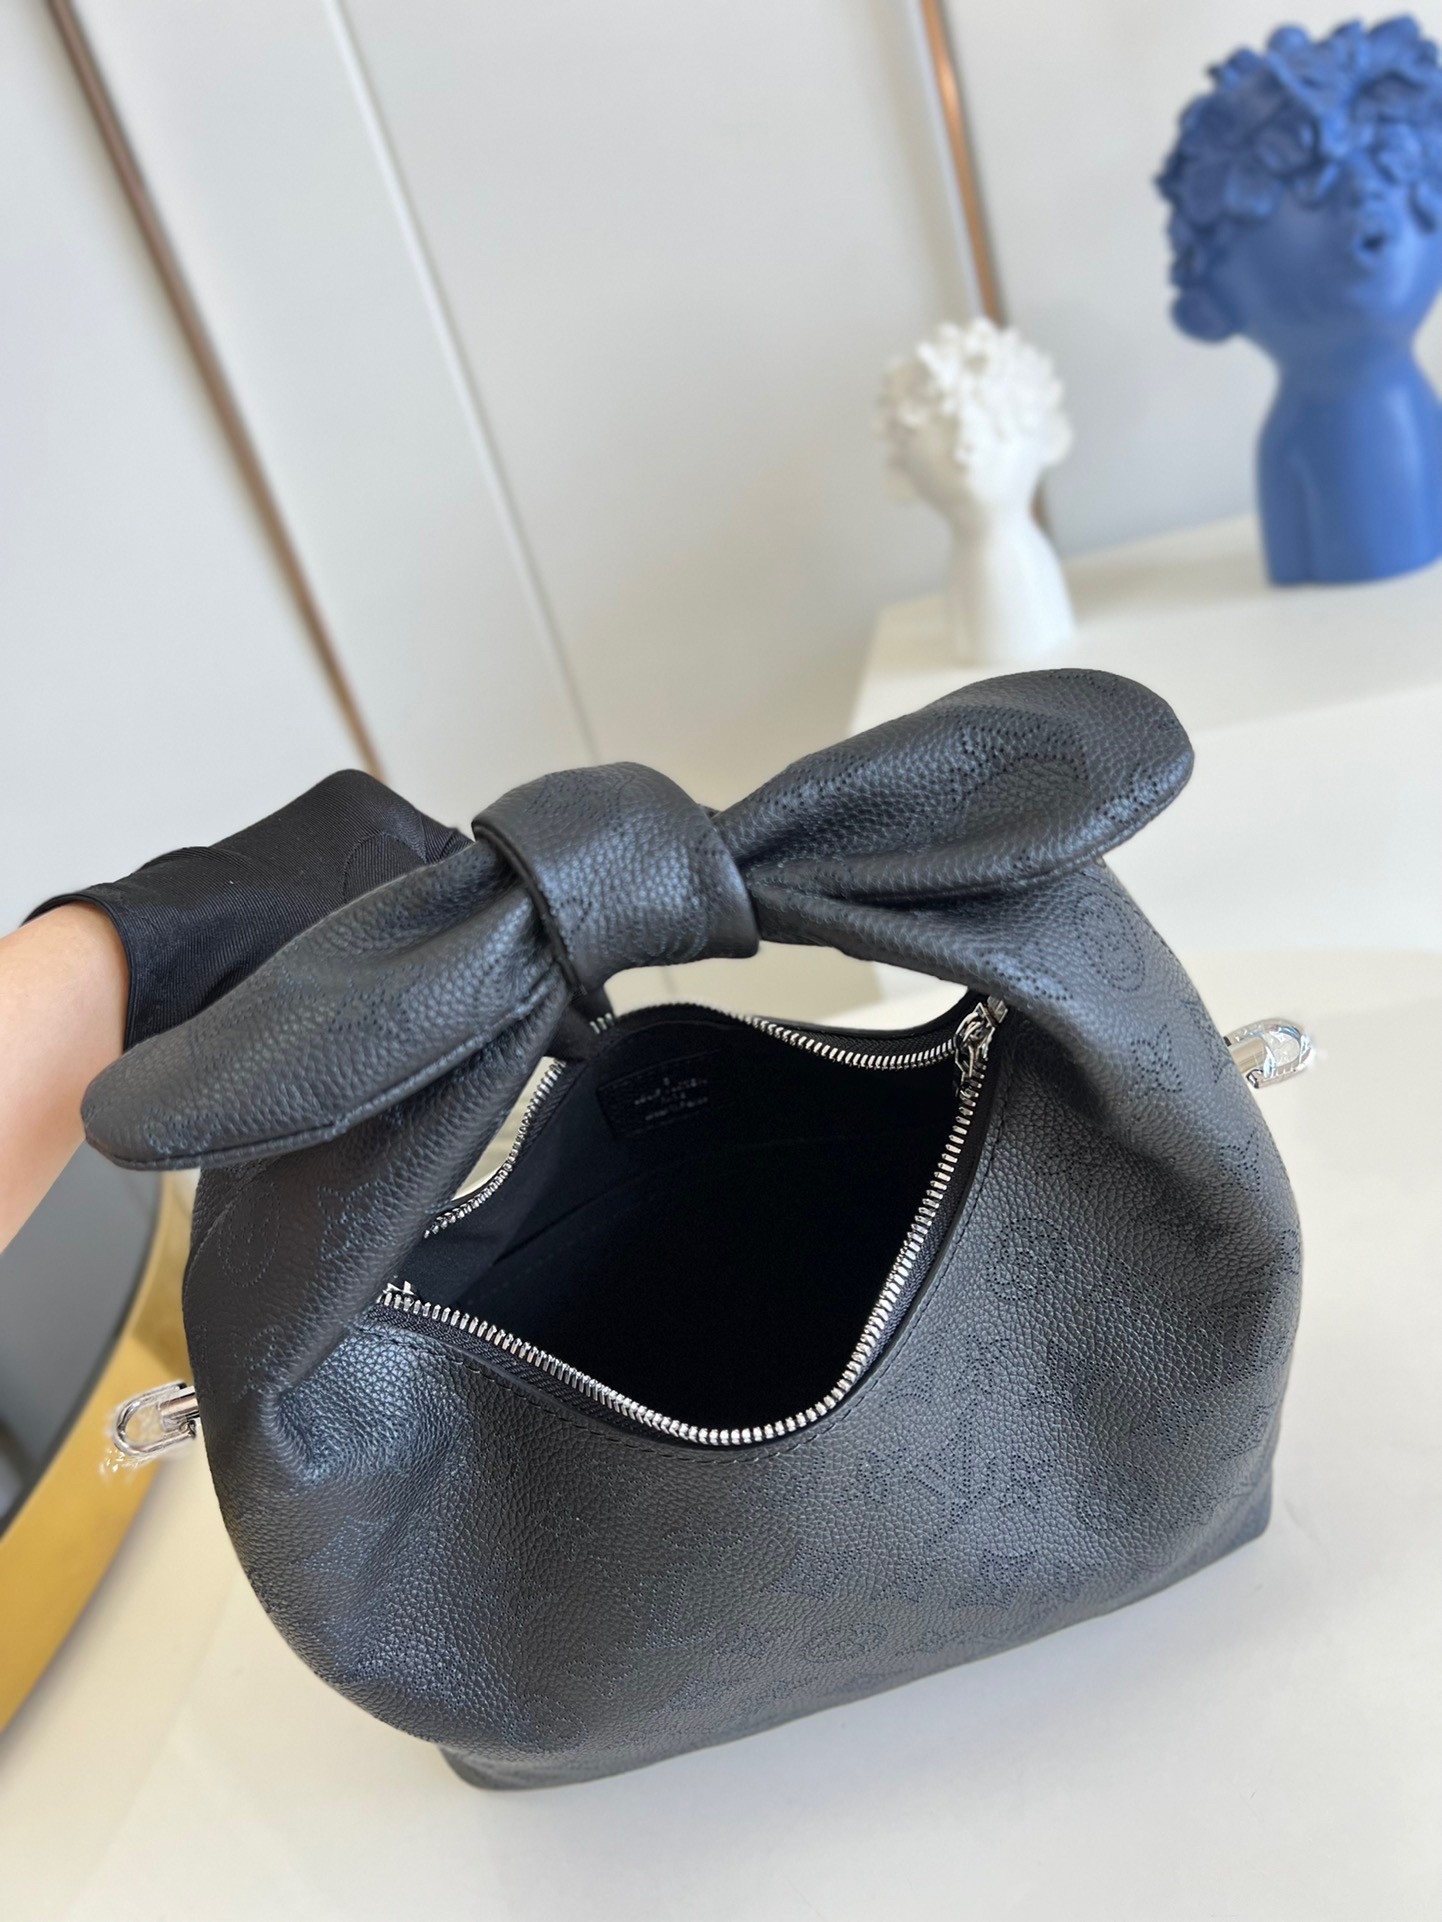 Why Knot PM Bag Mahina Leather - Handbags M20701